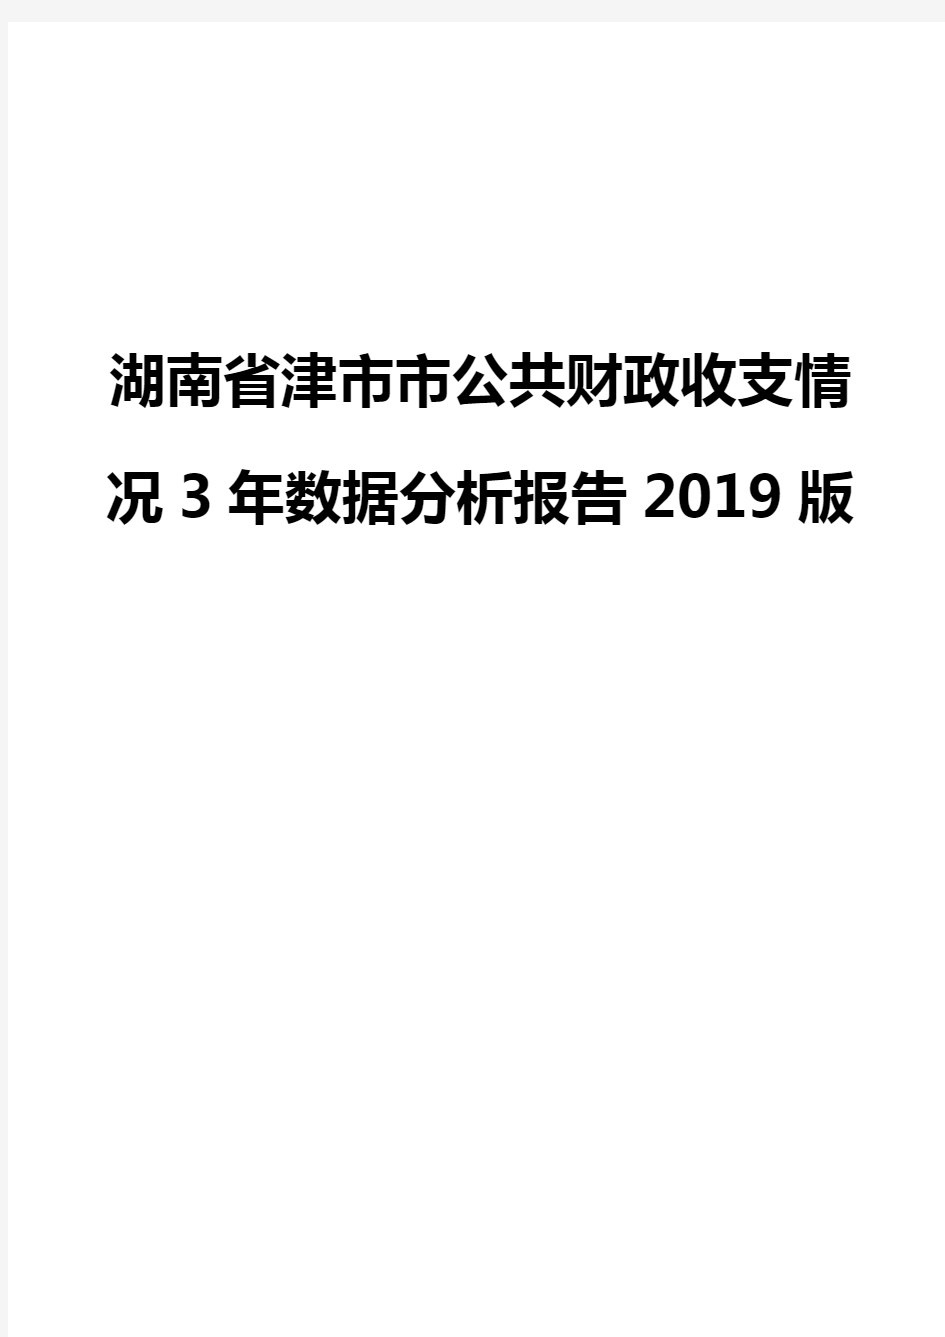 湖南省津市市公共财政收支情况3年数据分析报告2019版